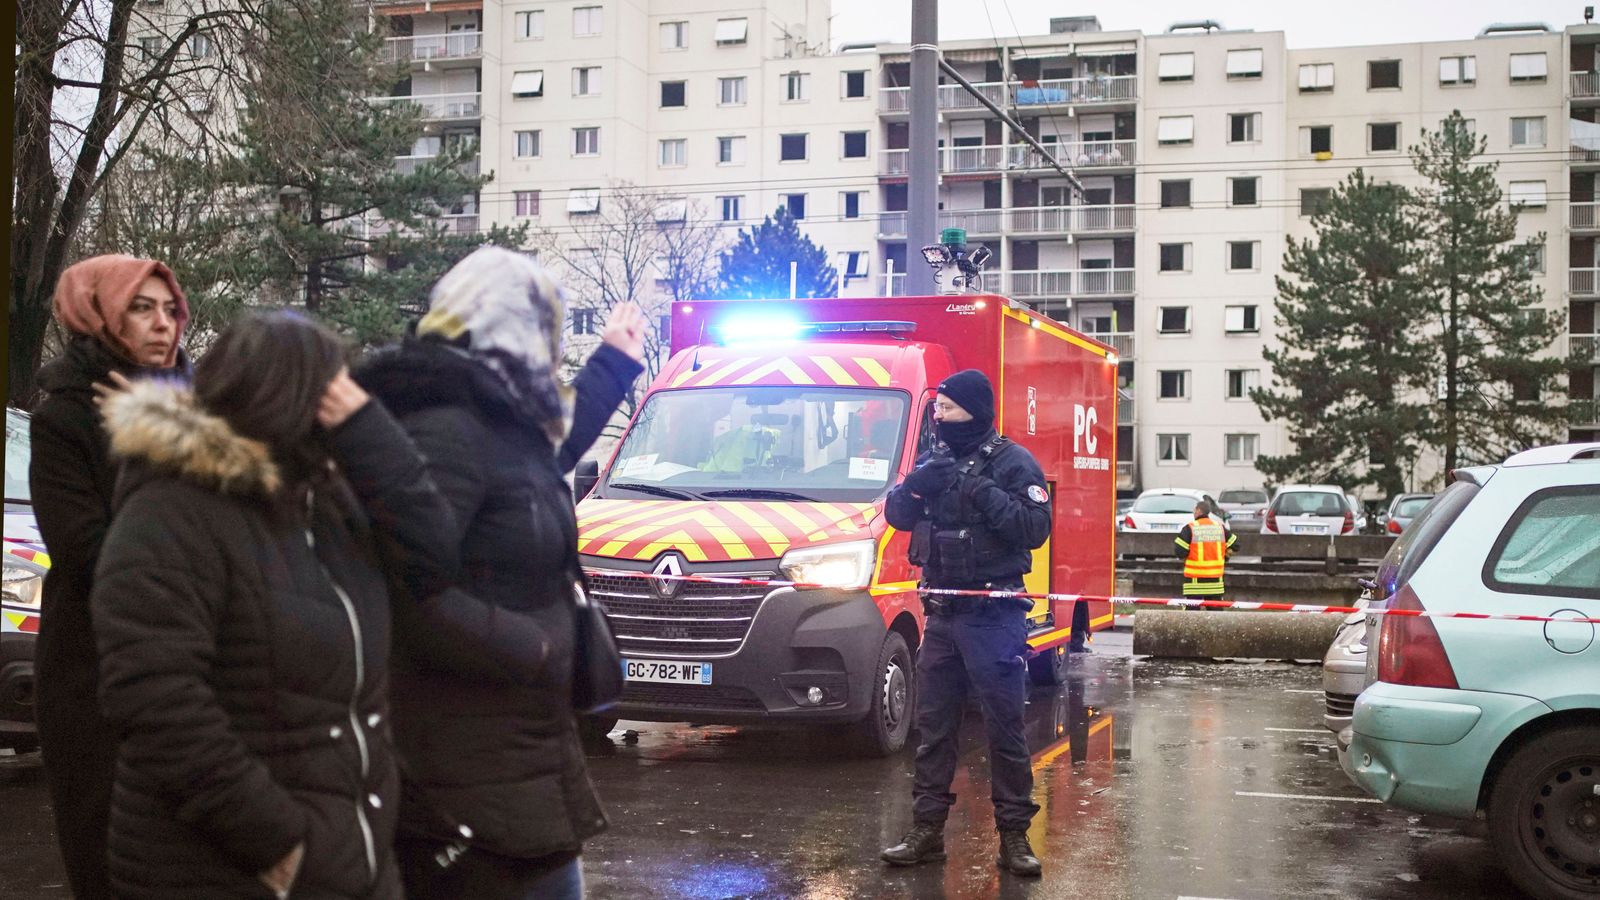 France fire: Ten dead, including five children, in blaze near Lyon